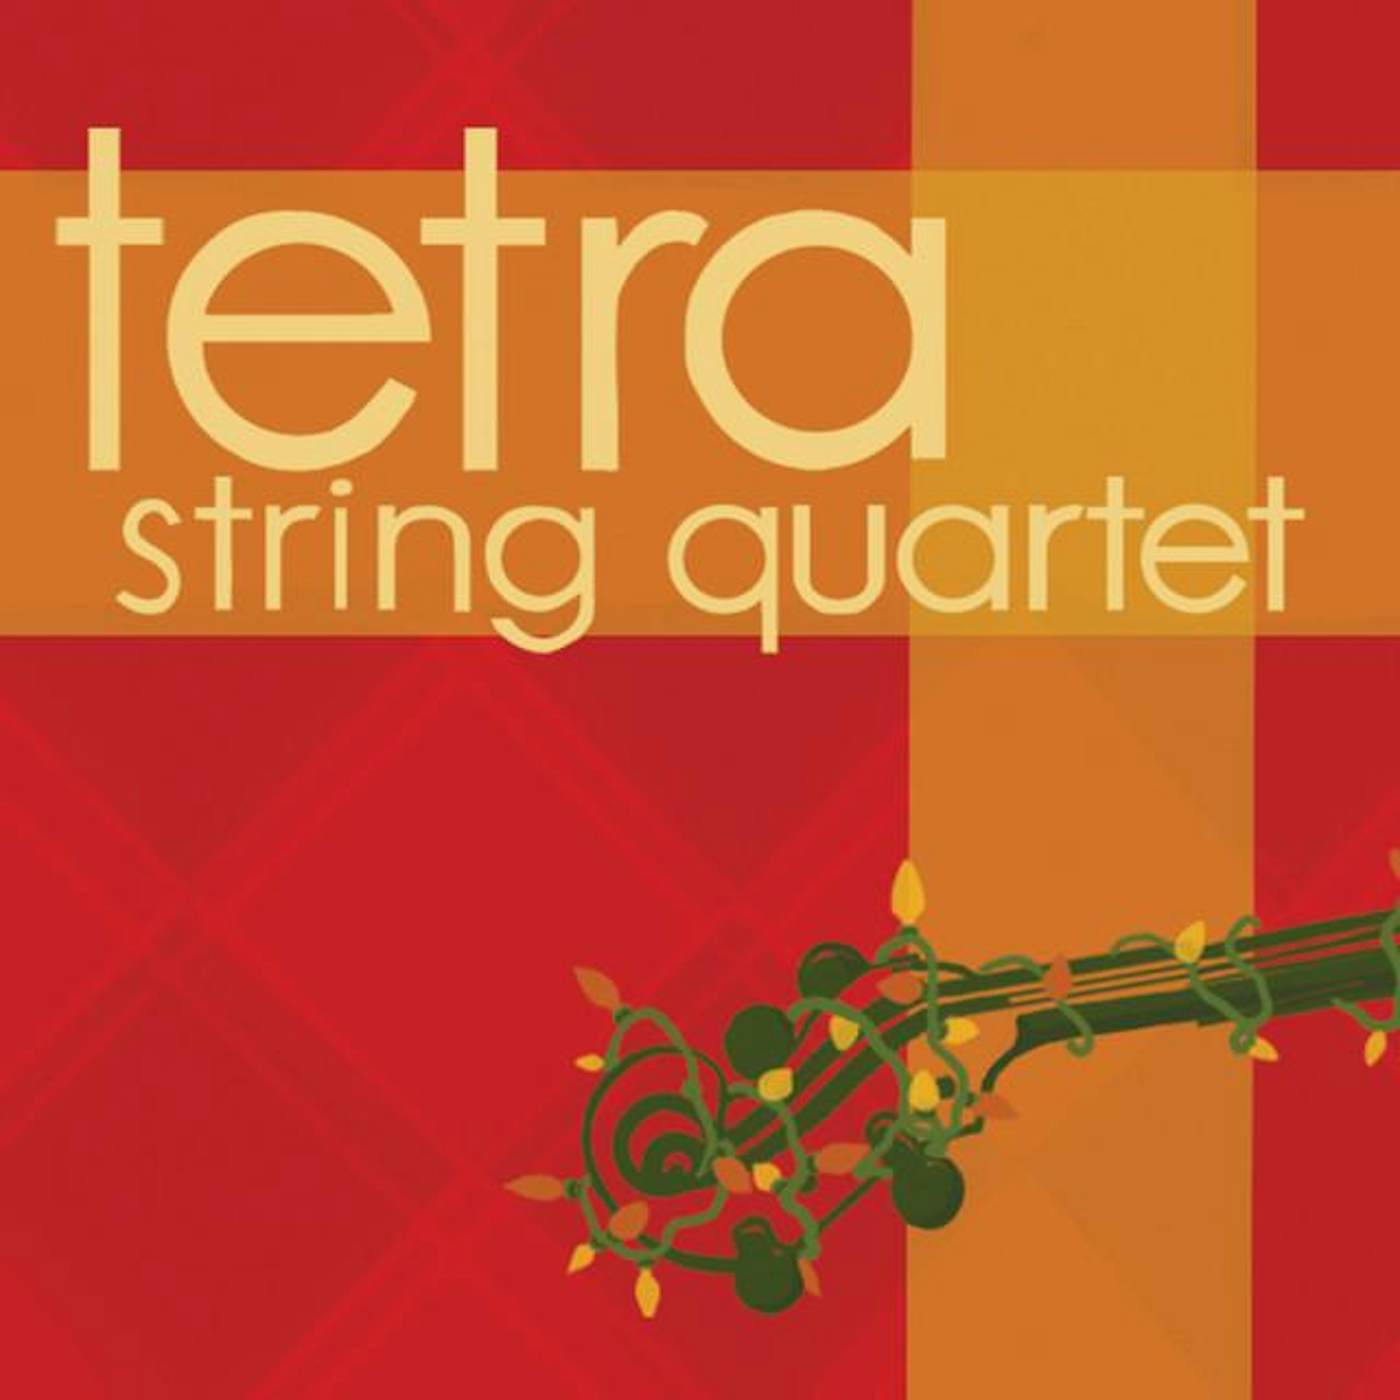 Tetra String Quartet